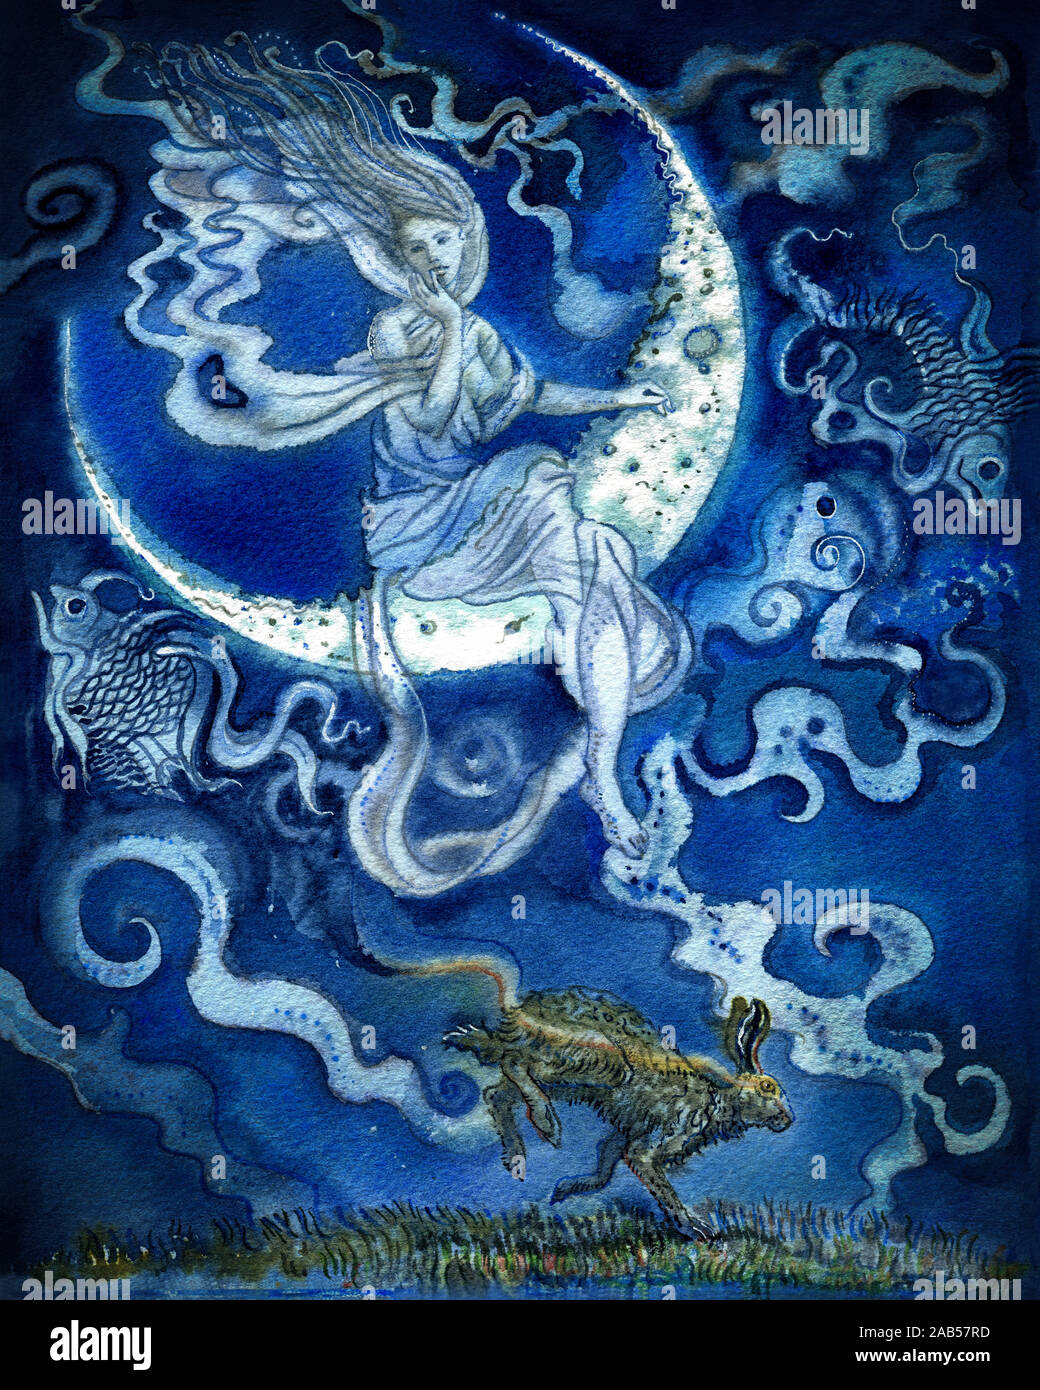 Déesse assise sur un croissant de lune dans un ciel bleu. Un symbole de lièvre et de poisson zodiaque. Illustration aquarelle dessinée à la main. Carte Tarot, carte métaphorique Banque D'Images